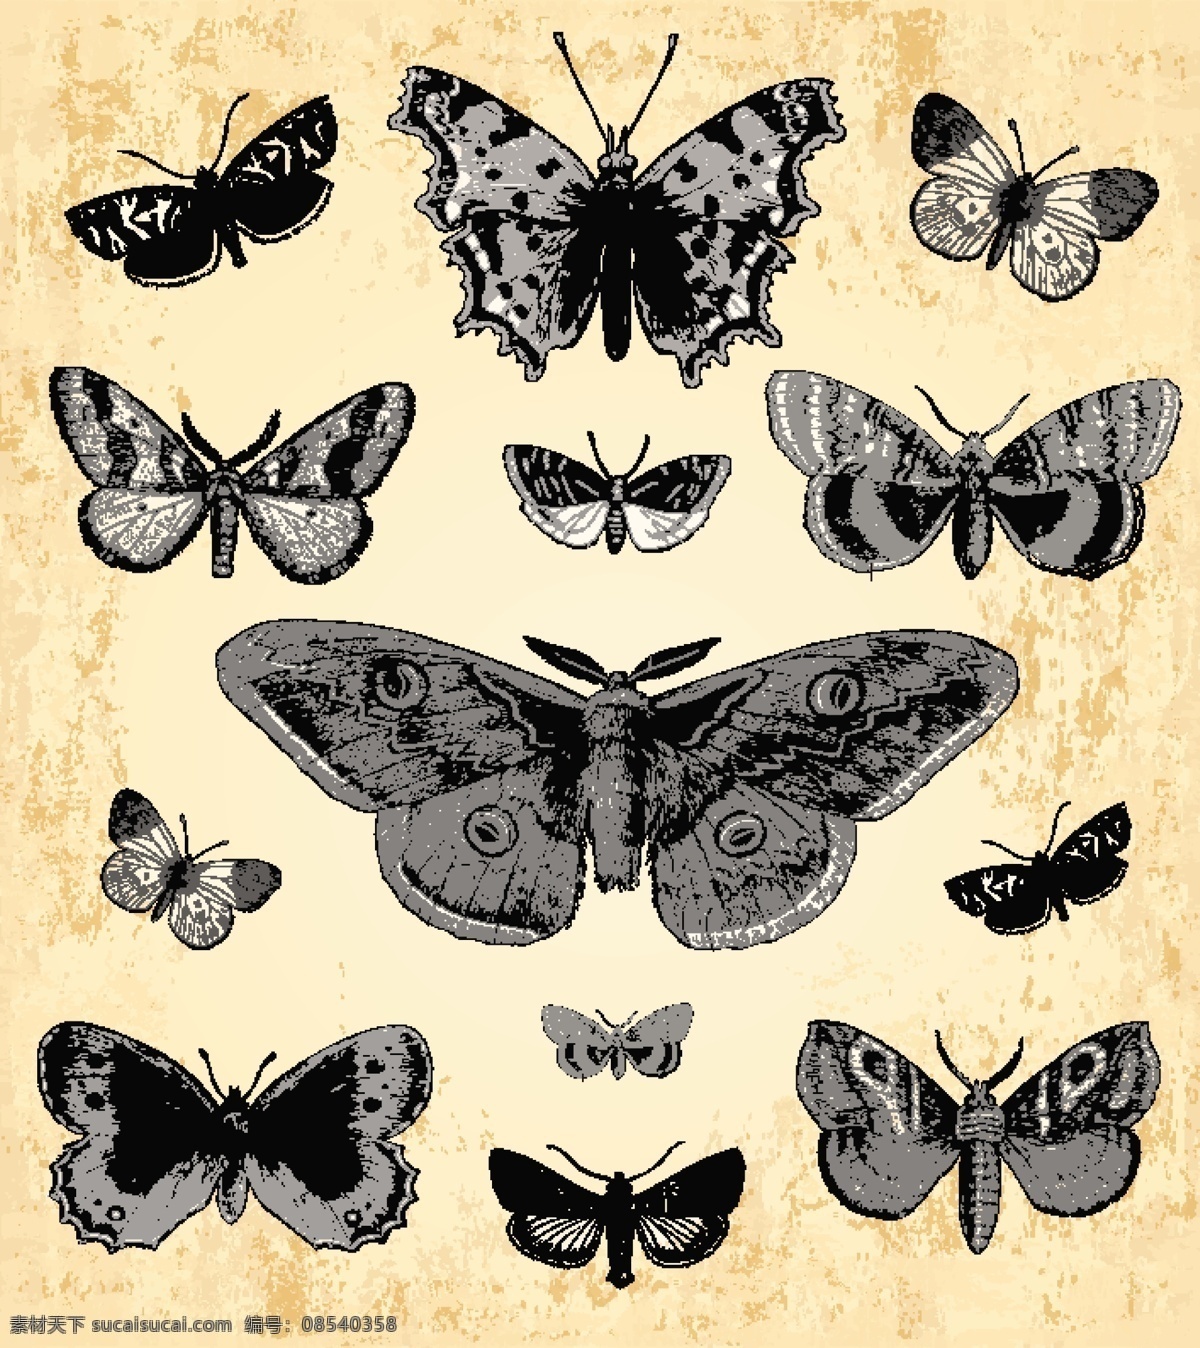 手绘 古典 蝴蝶 矢量 集 古董 矢量动物 图像 旧货 矢量图 矢量人物